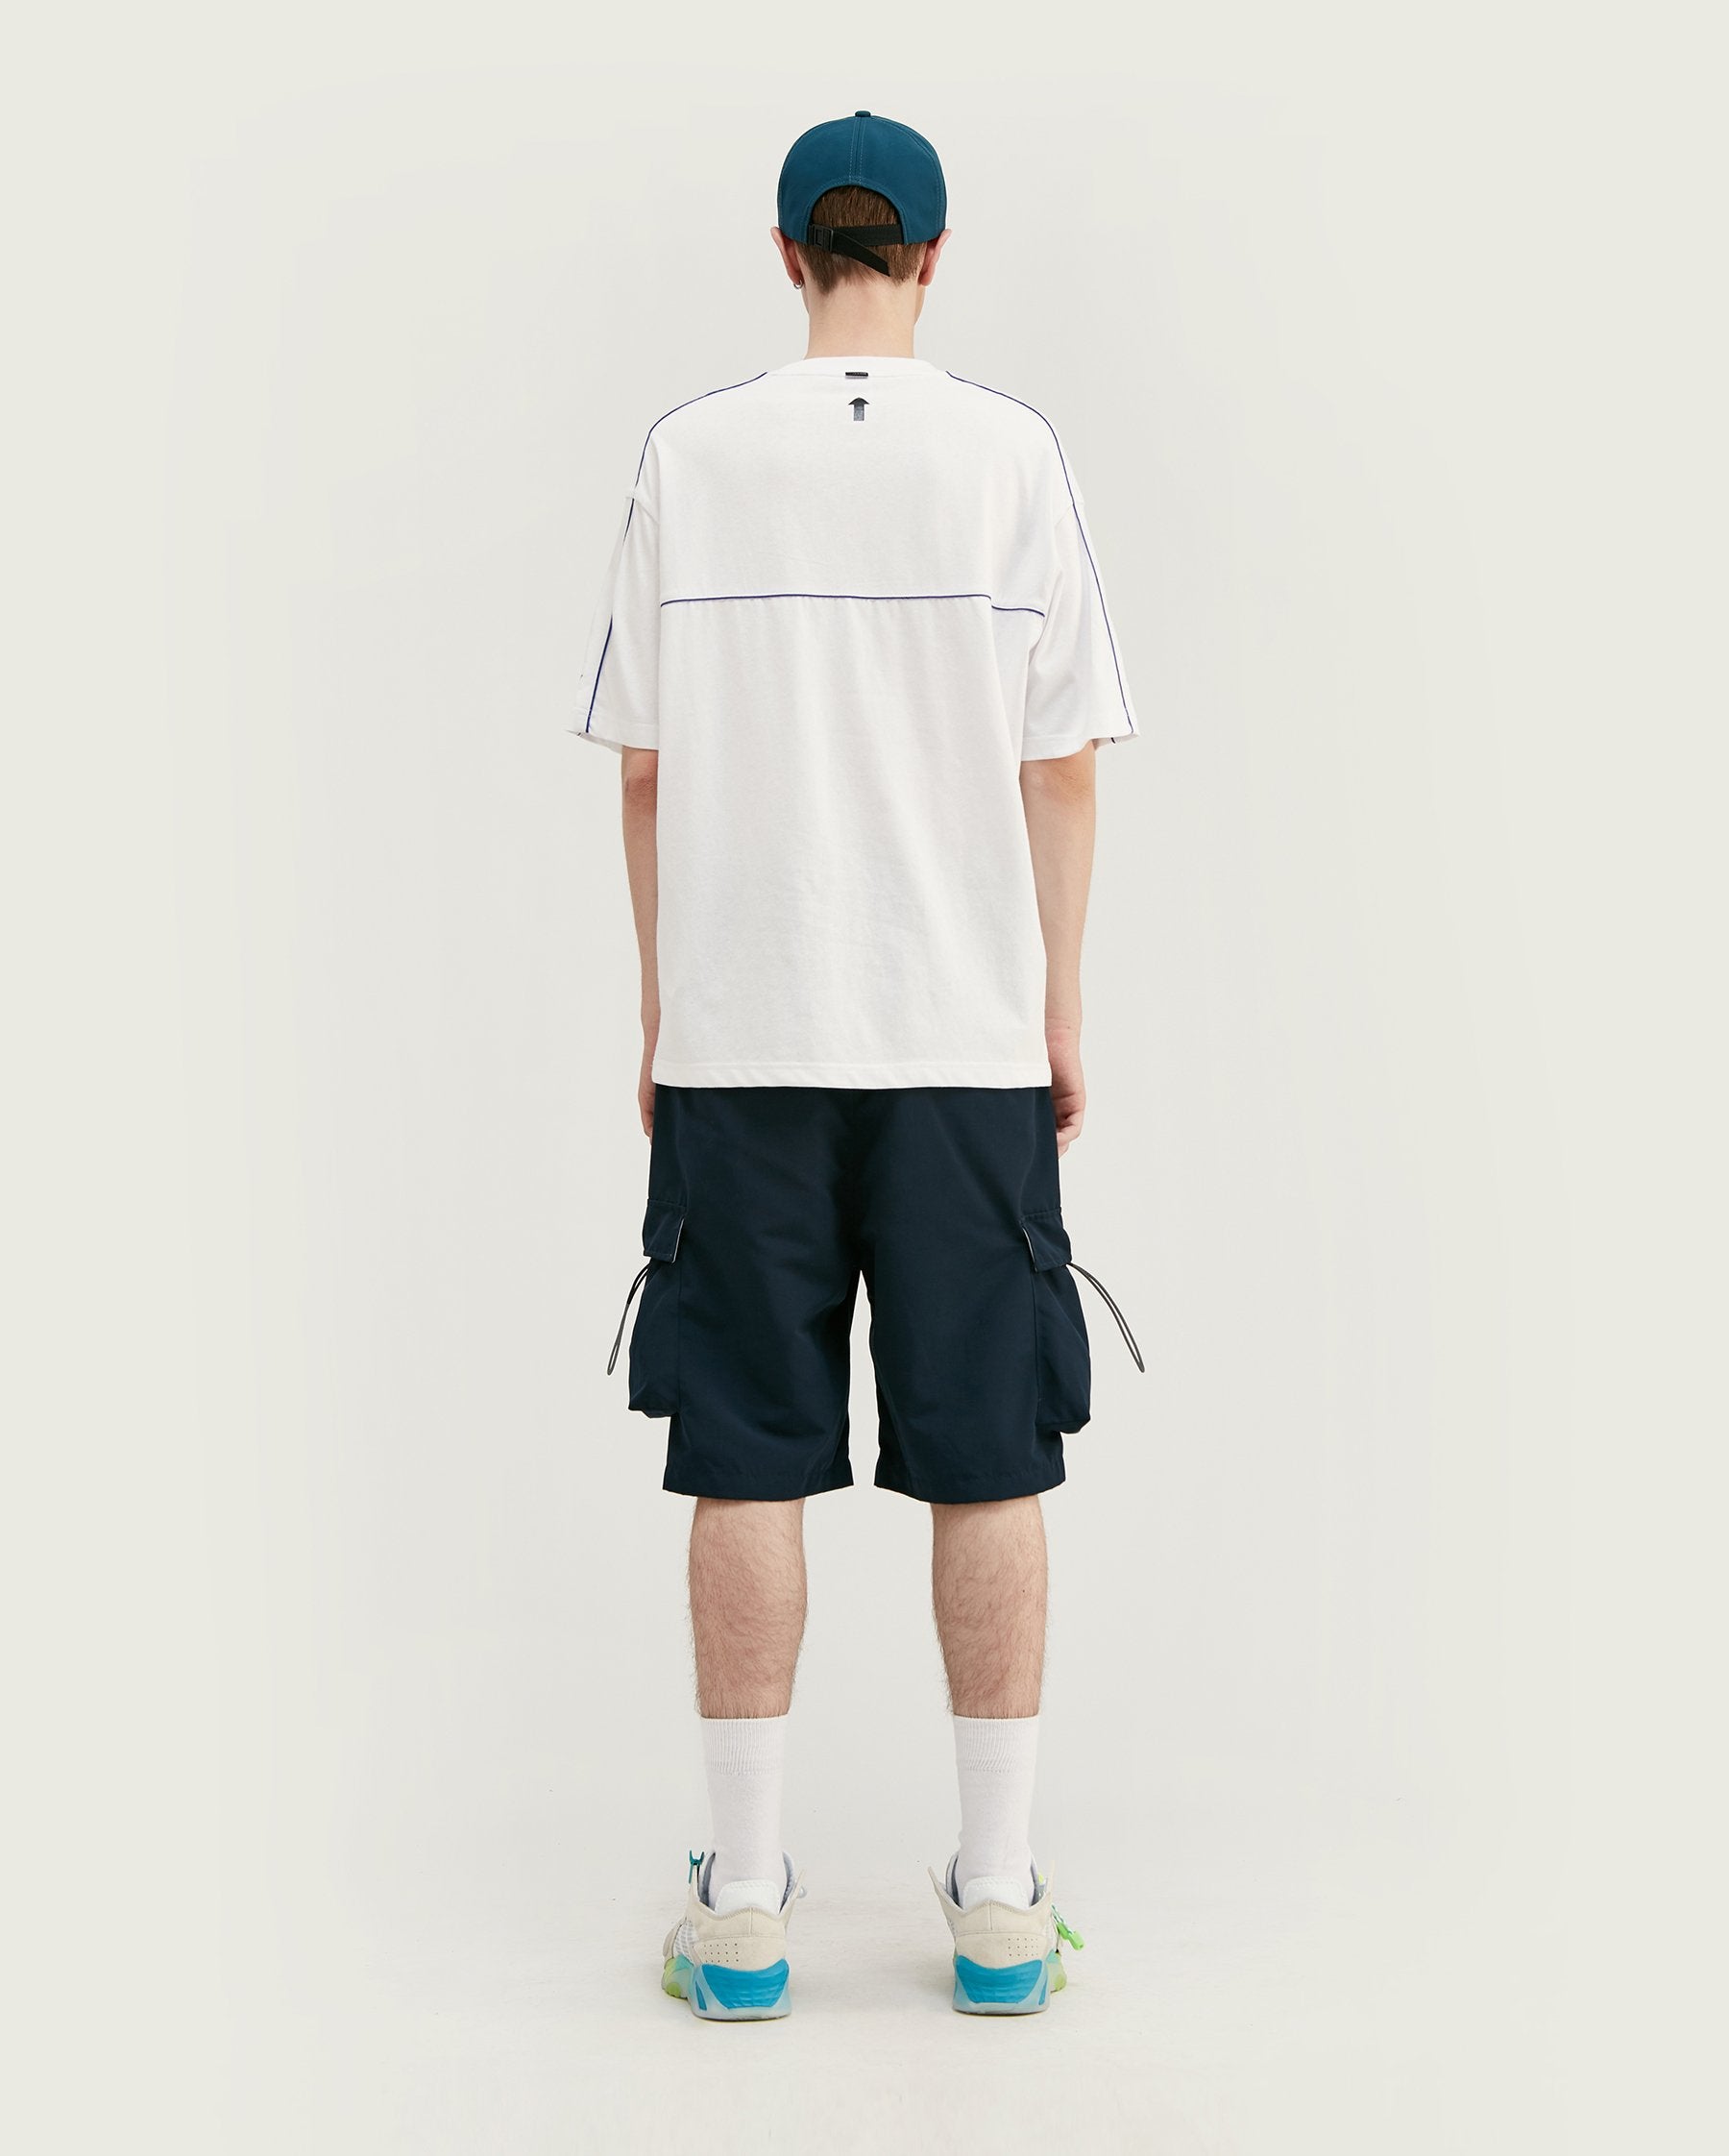 T-shirt oversize avec logo en relief - Blanc - Boutique en ligne Streetwear